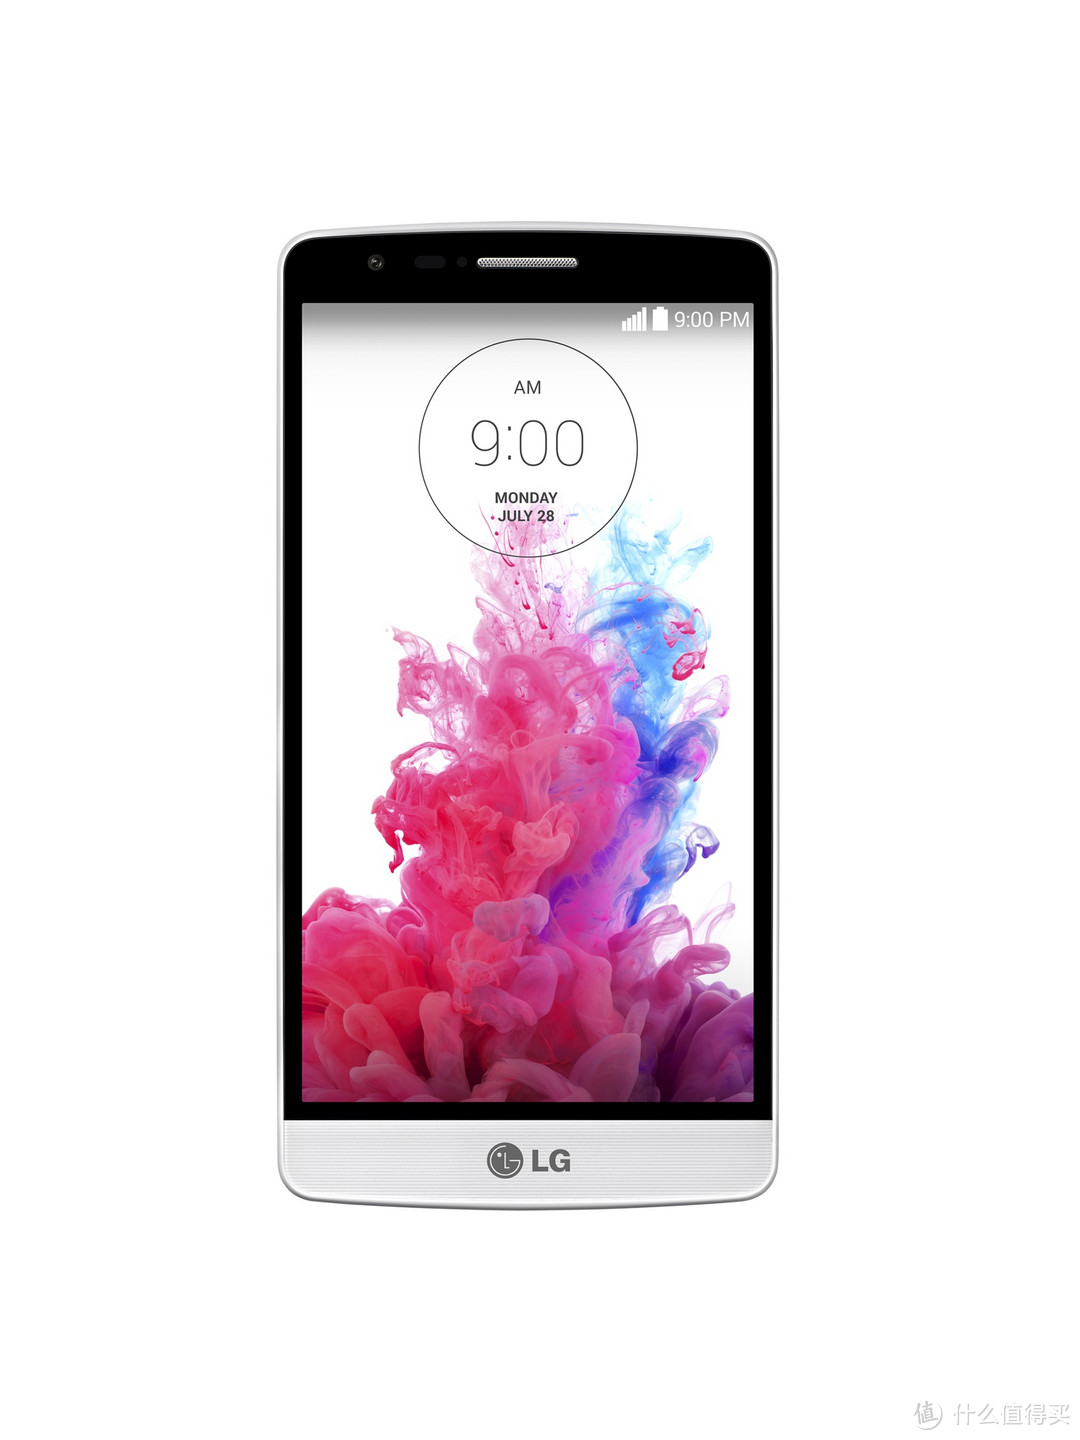 LG 发布迷你版 G3 Beat 缩水5寸720p屏 有国行电信版